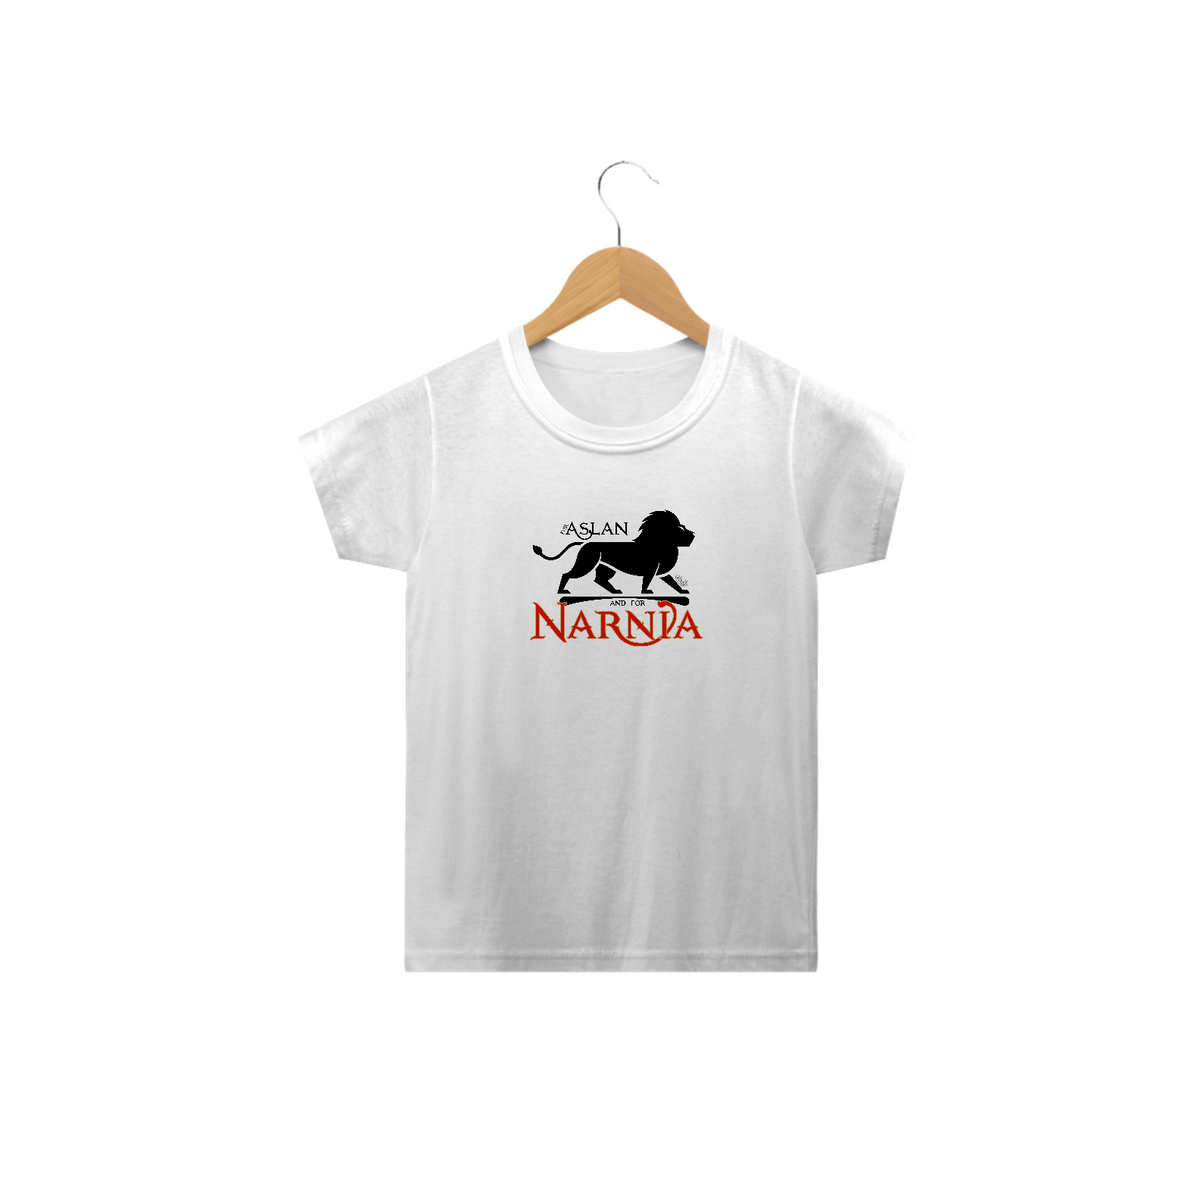 Nome do produto: Camiseta Infantil For Aslan - cores claras [As Crônicas de Nárnia].